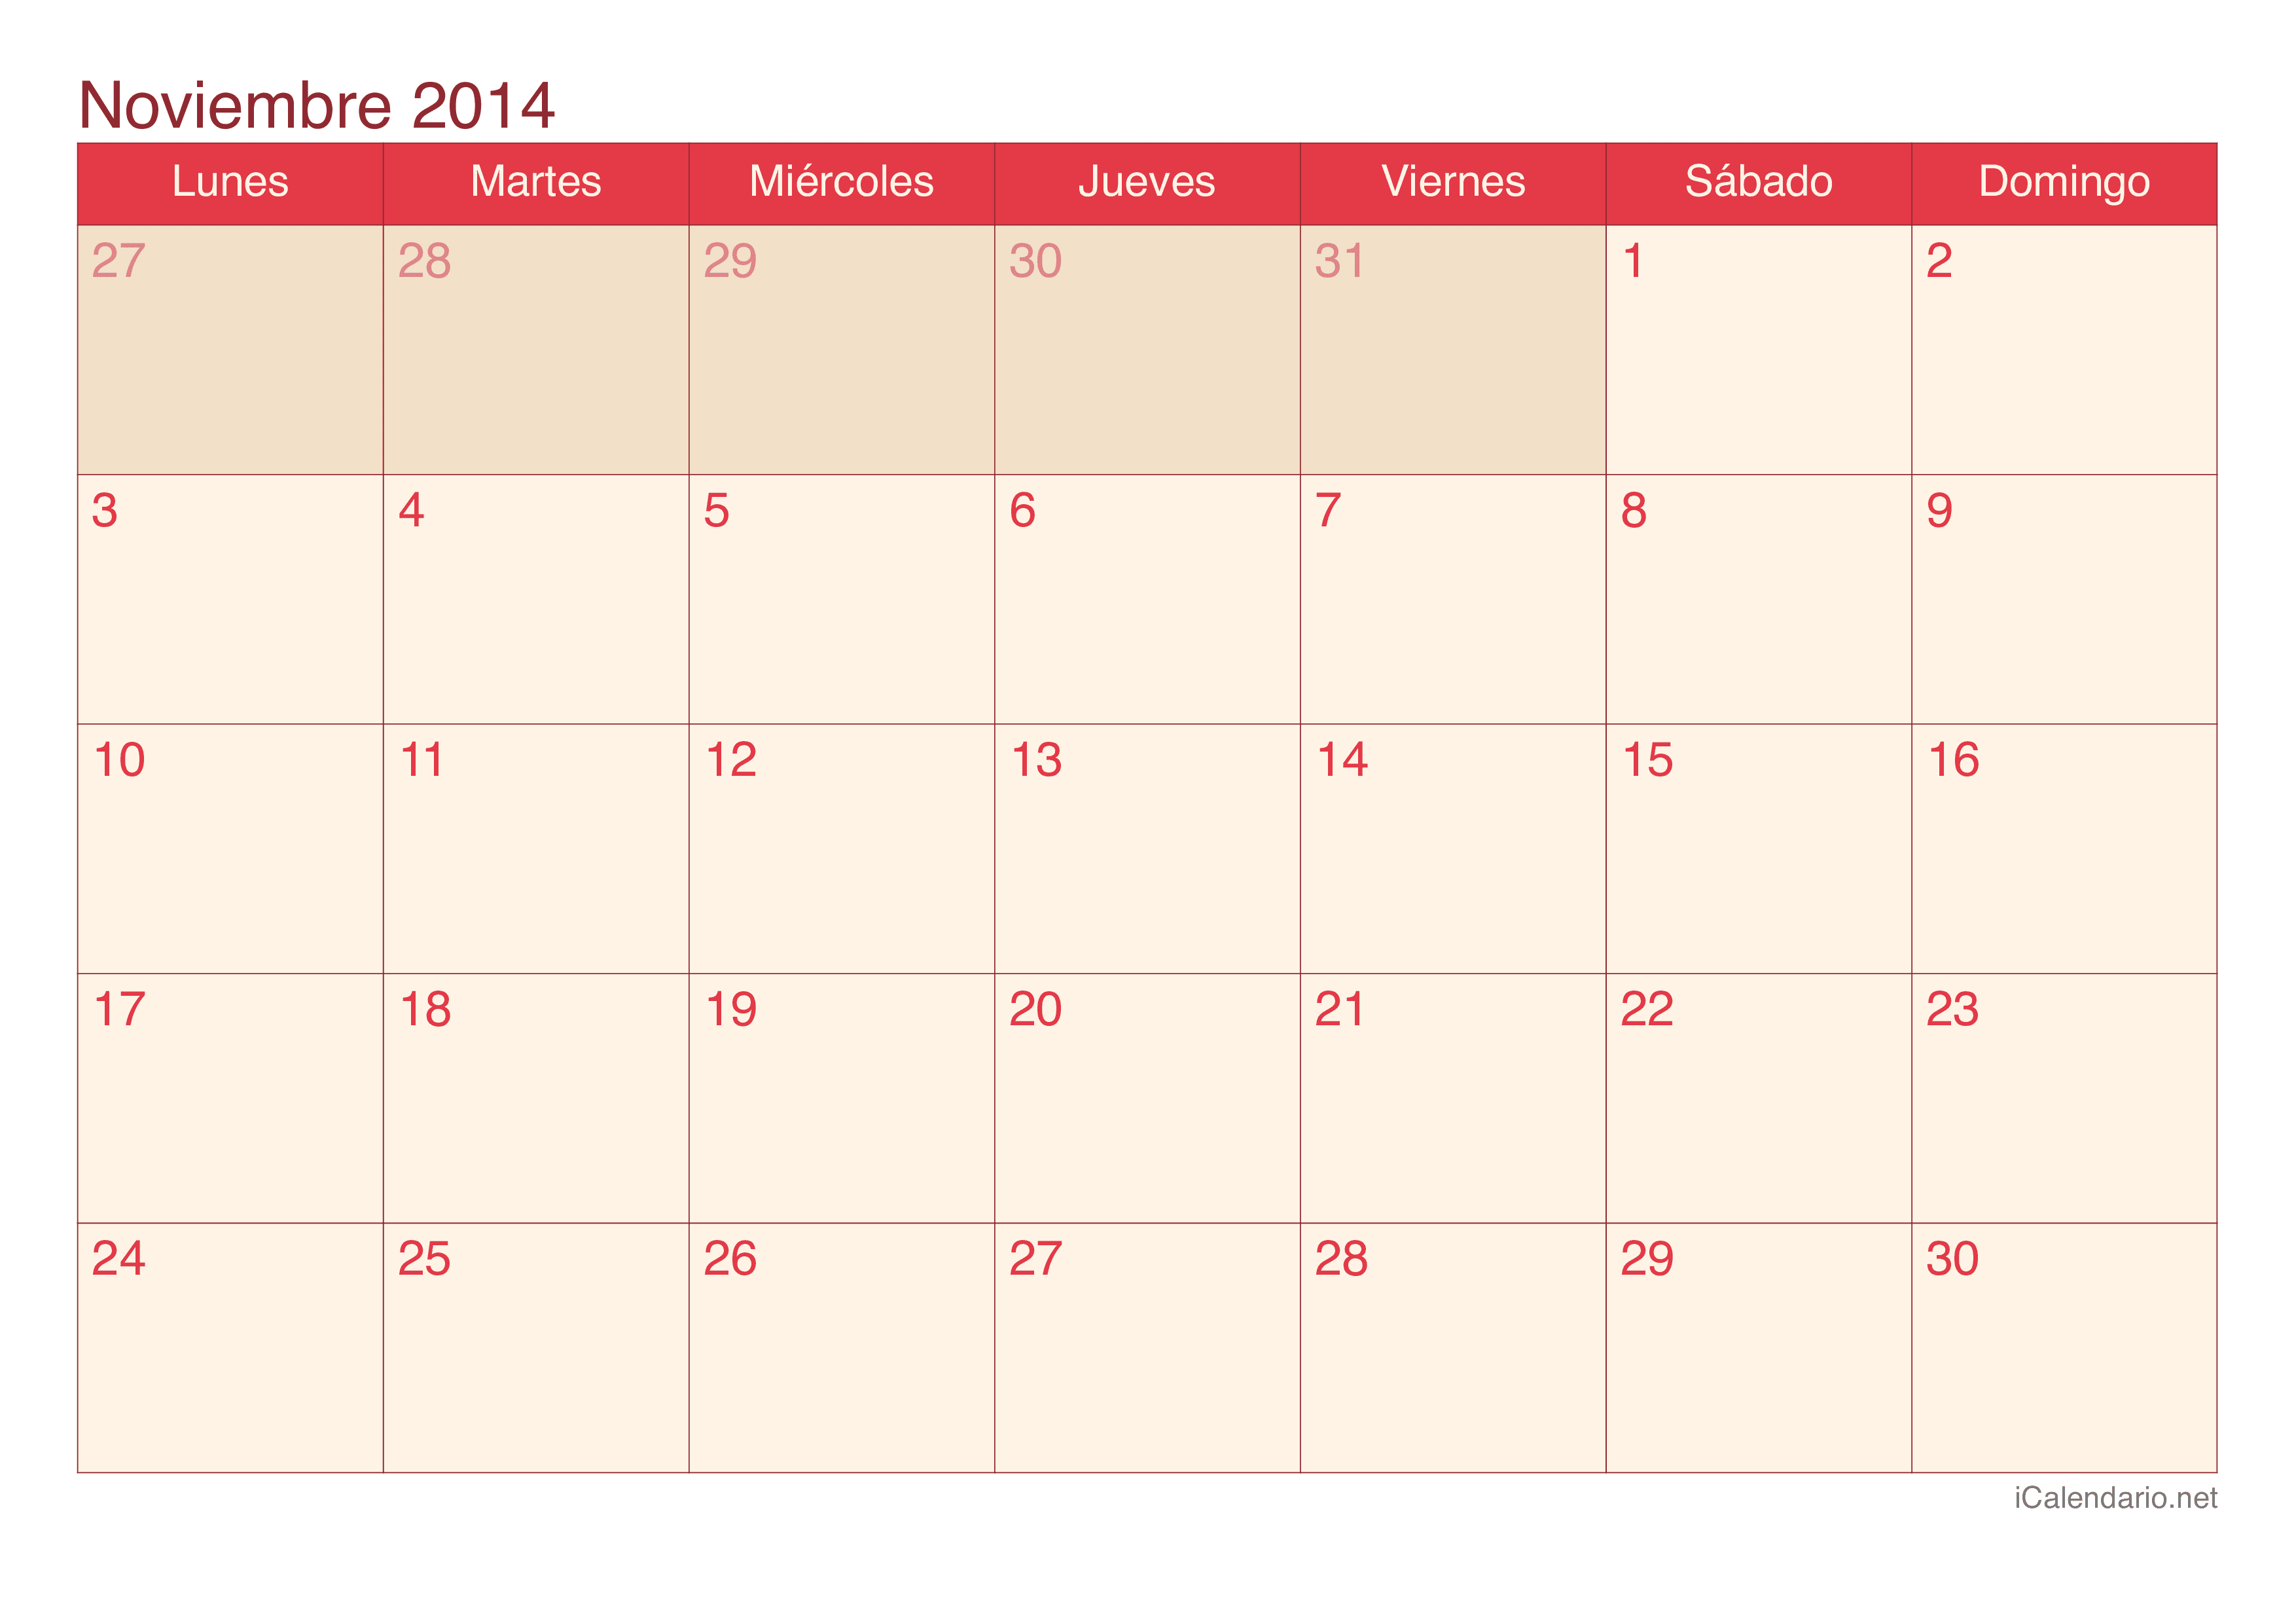 Calendario de noviembre 2014 - Cherry